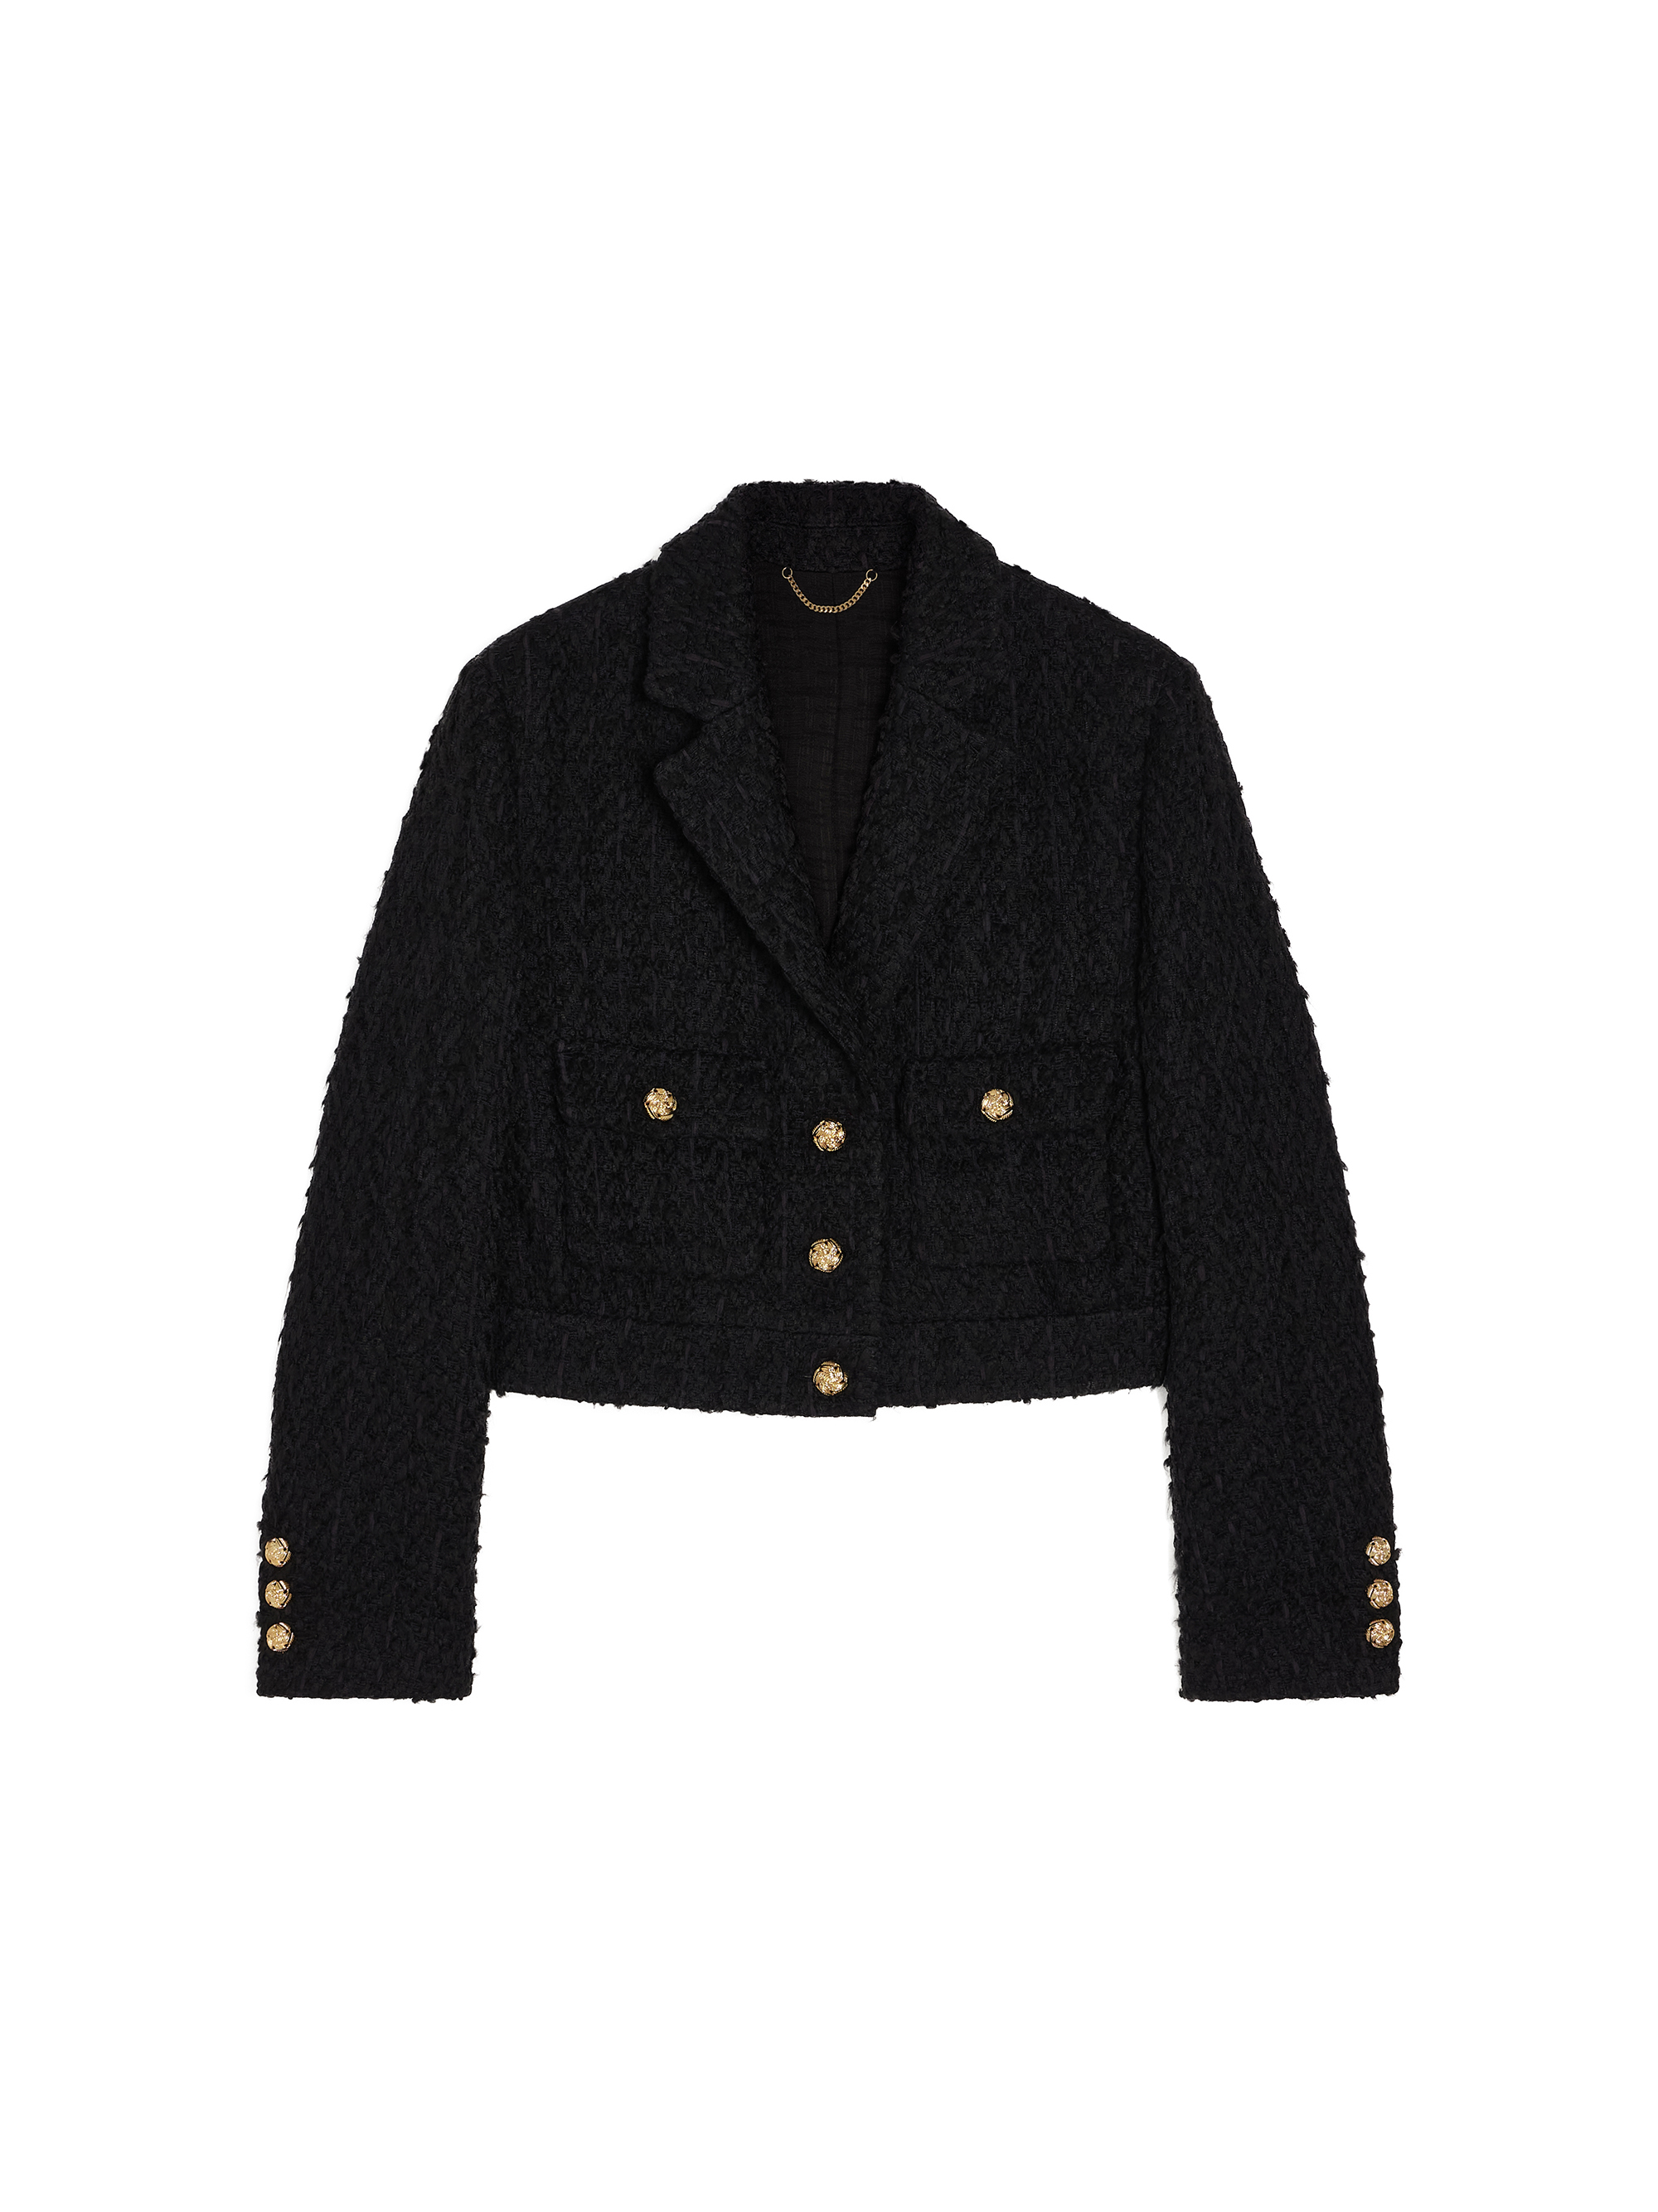 Tweed Cropped Jacket / 트위드 크롭 자켓